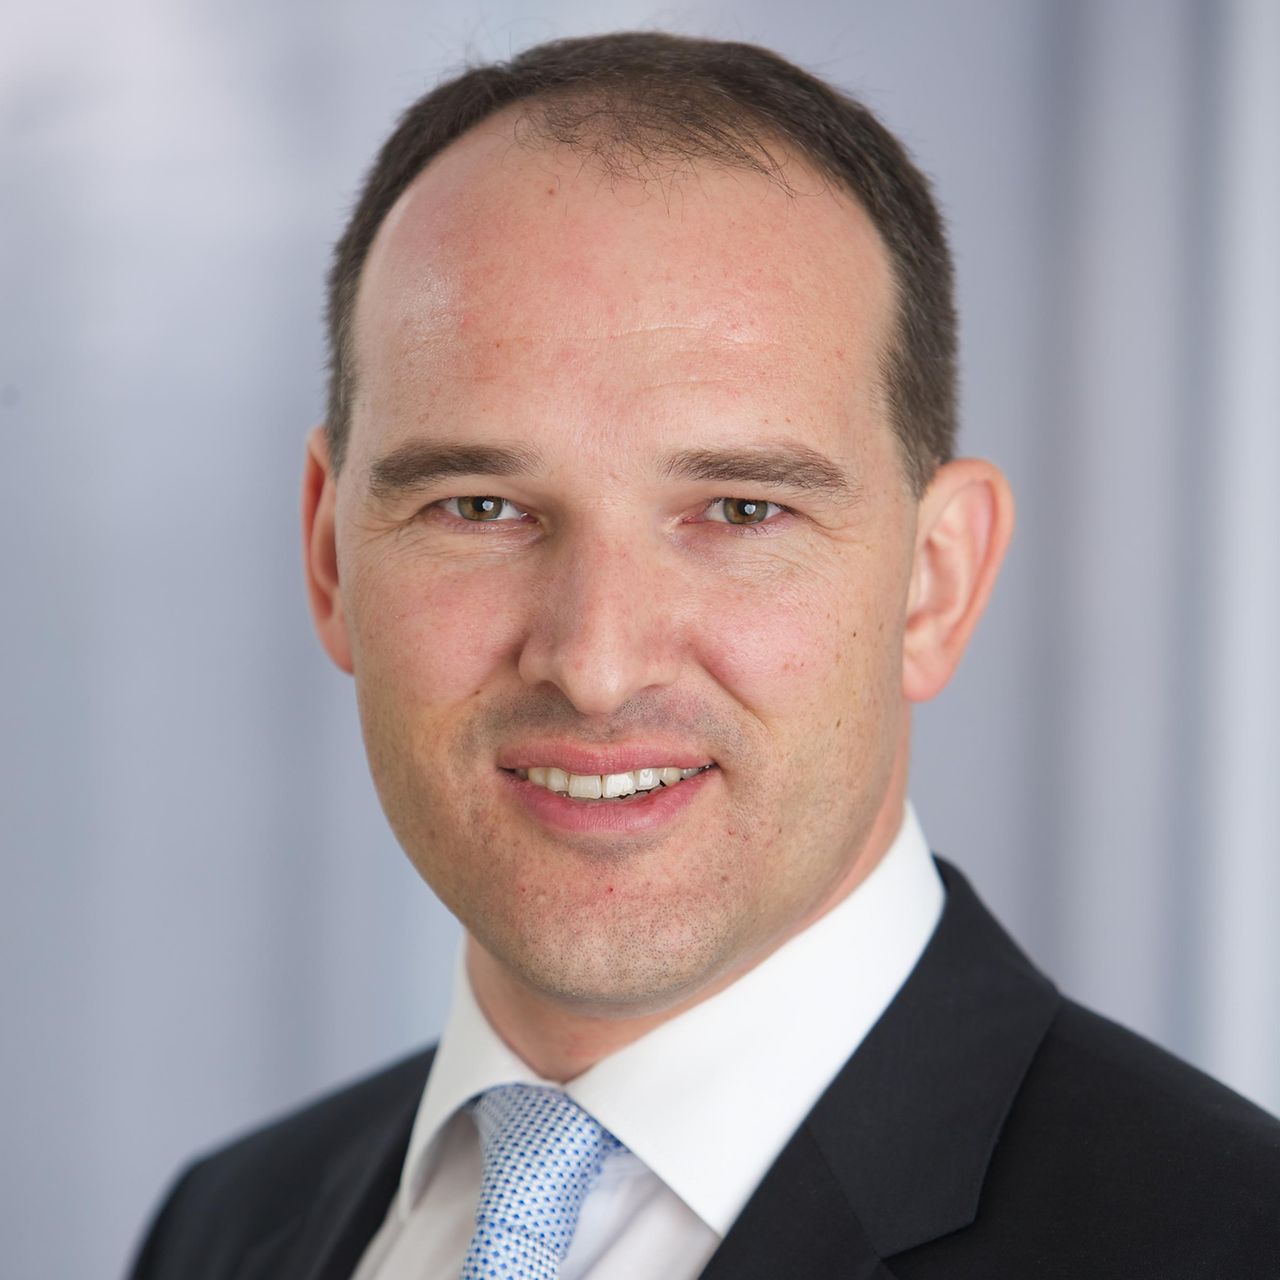 Jörg Heizmann, Senior Sales Manager Big Data & AI